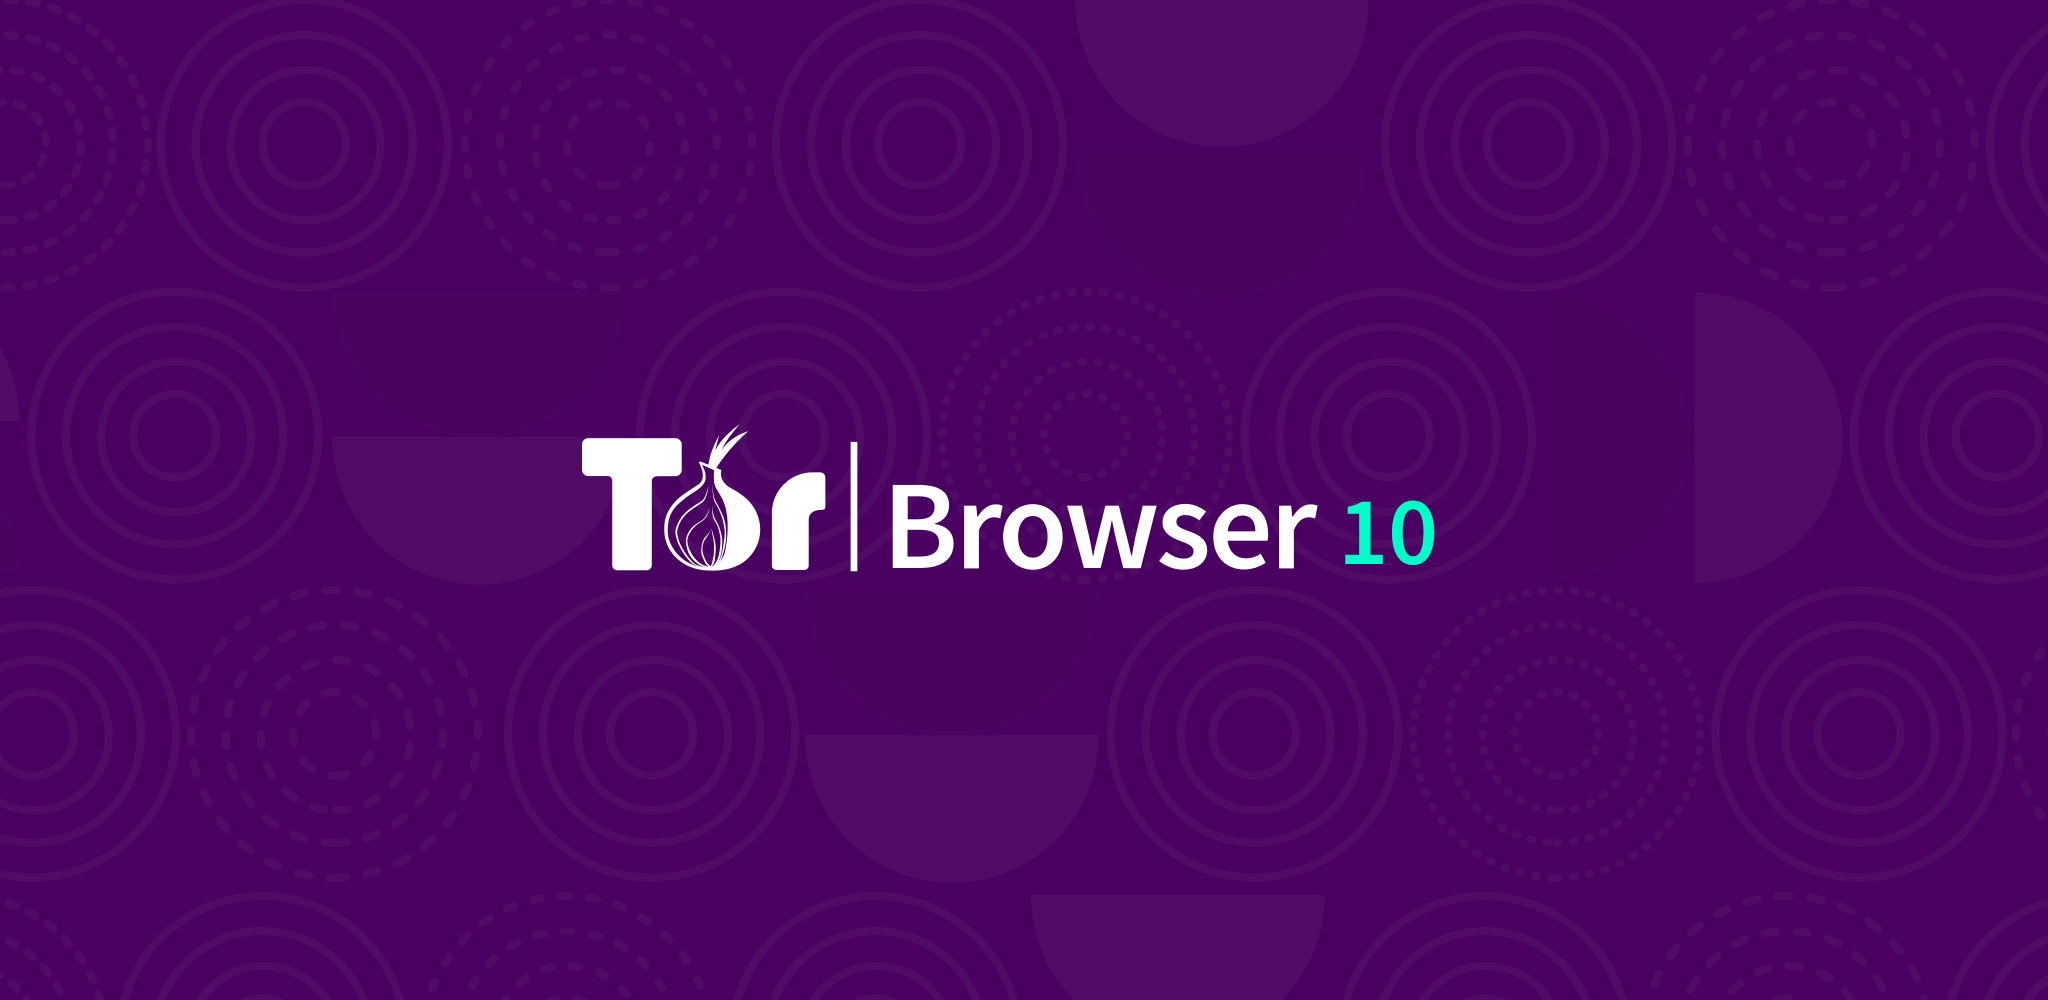 Обновление tor browser mega официальный сайт tor browser на русском mega